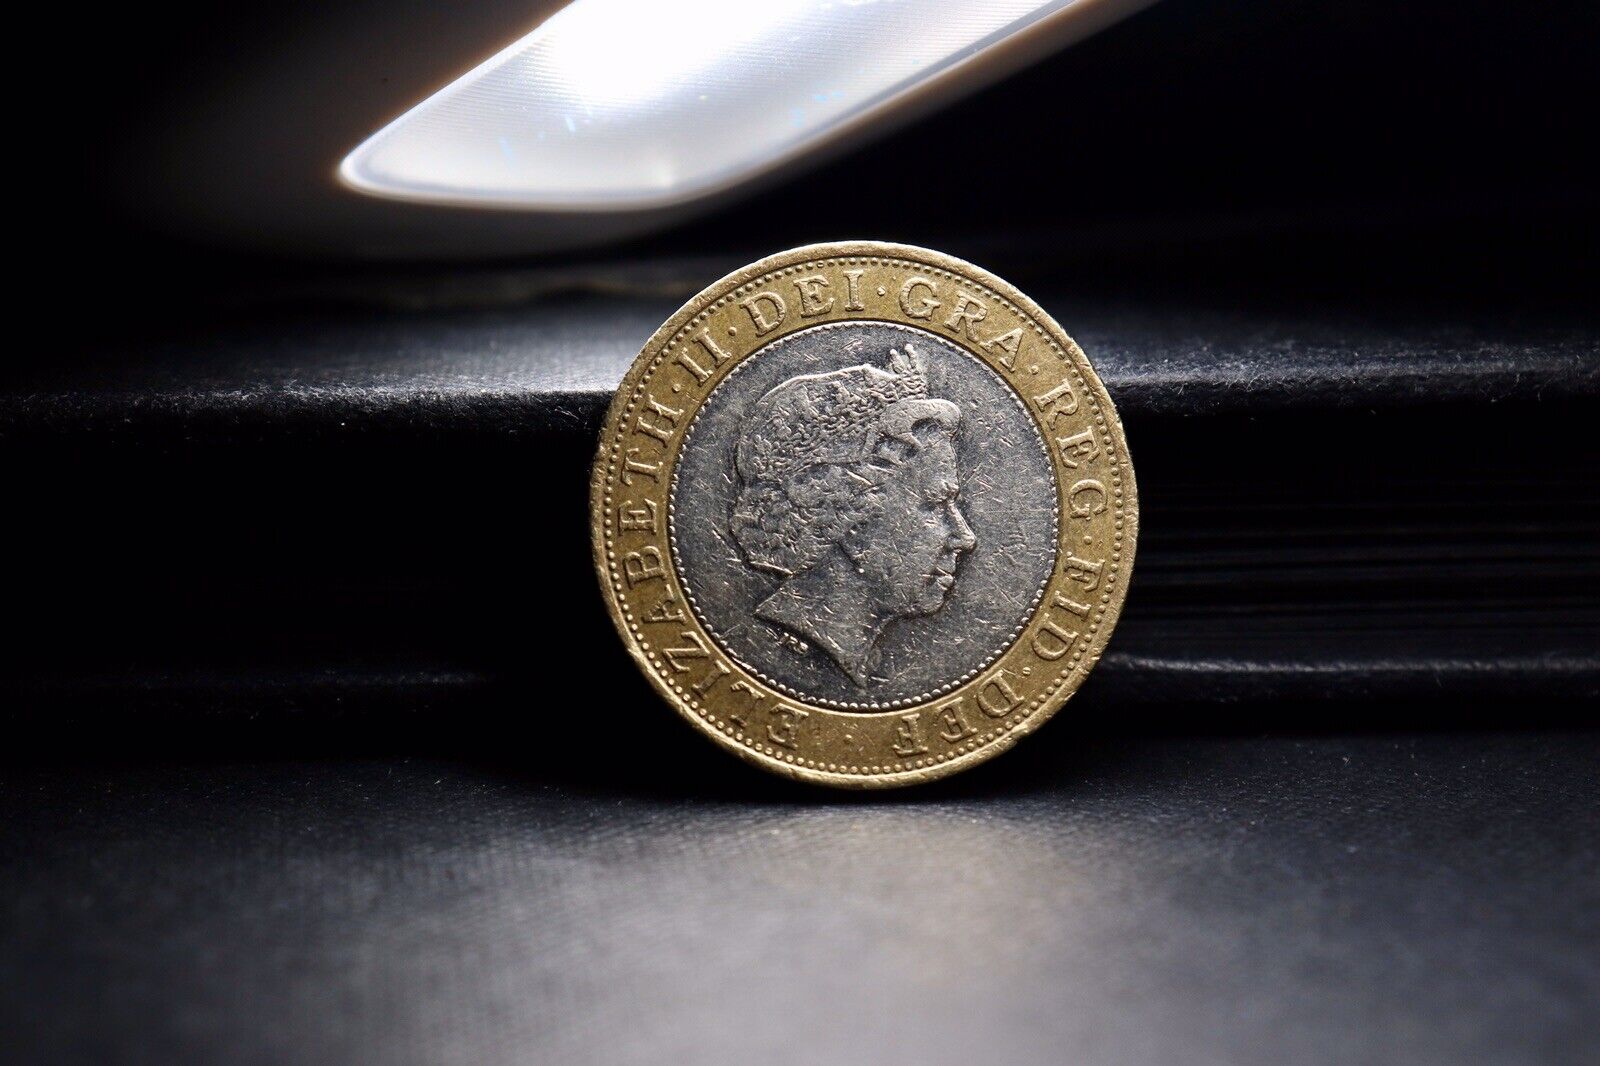 Steam Locomotive Queen Elizabeth II £2 Coin - Mintage: 5,, - Scarcity Index: 8